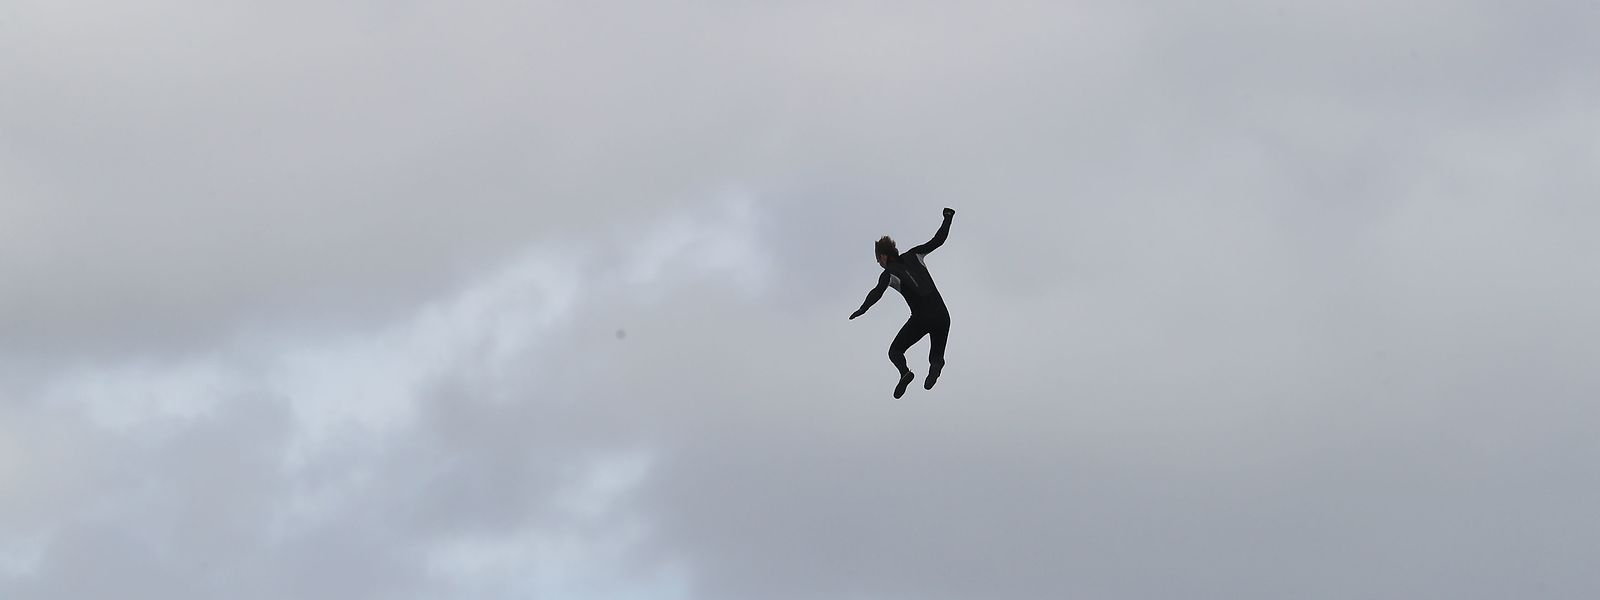 John Bream, ehemaliger Fallschirmspringer aus Großbritannien, springt aus etwa 40 Metern Höhe von einem Hubschrauber aus ins Meer.